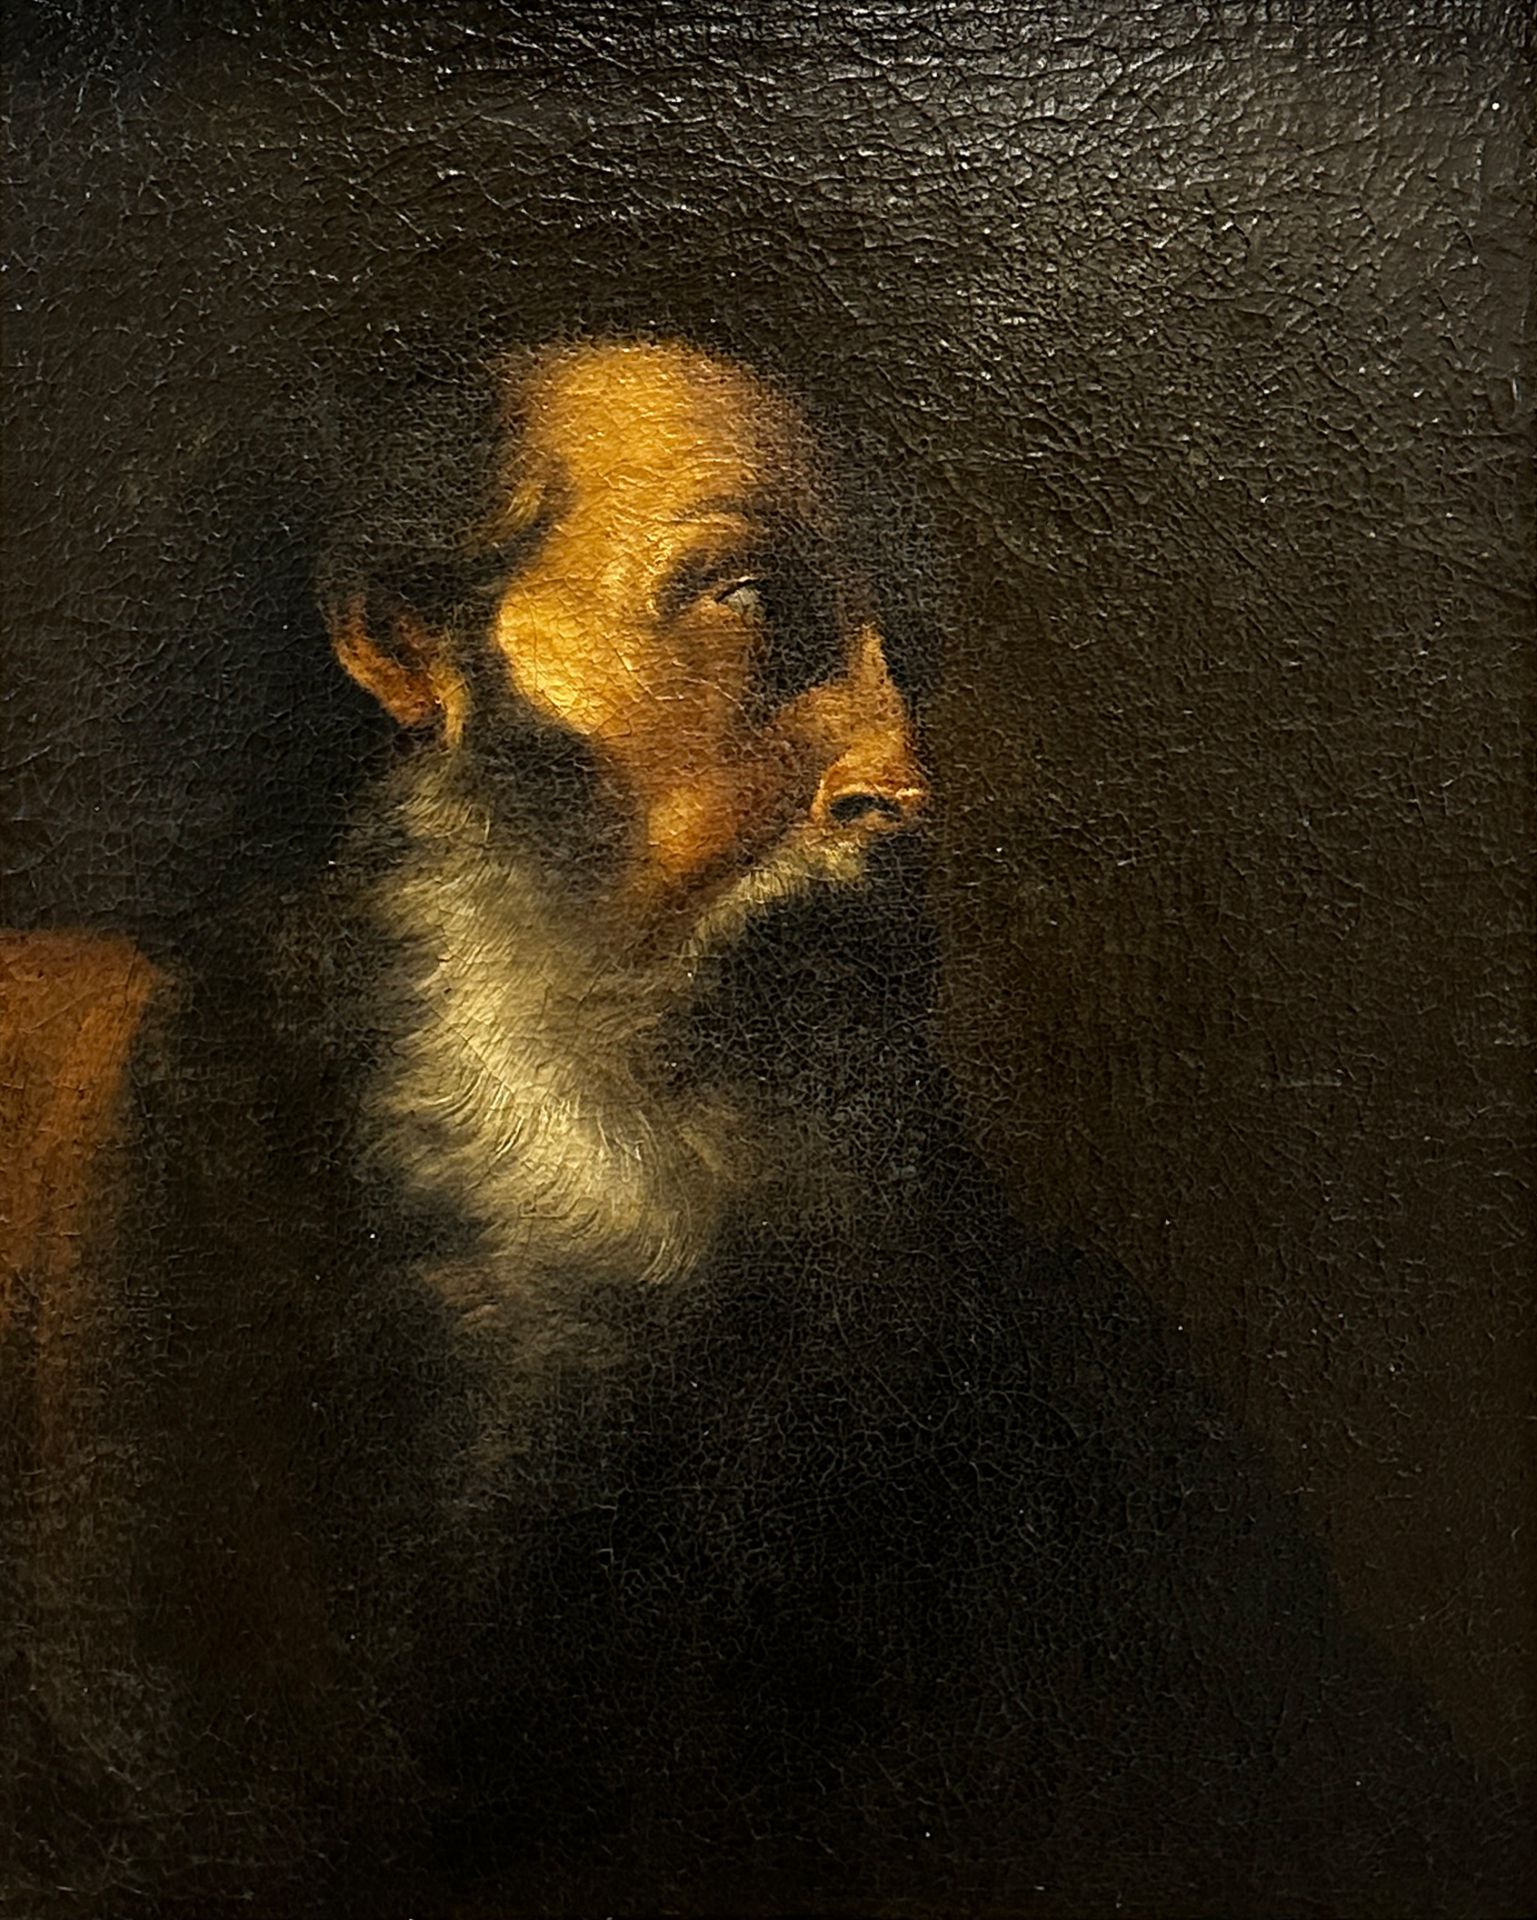 Jacob JORDAENS (1593 - 1678) aus dem Umkreis. Apostel Petrus.